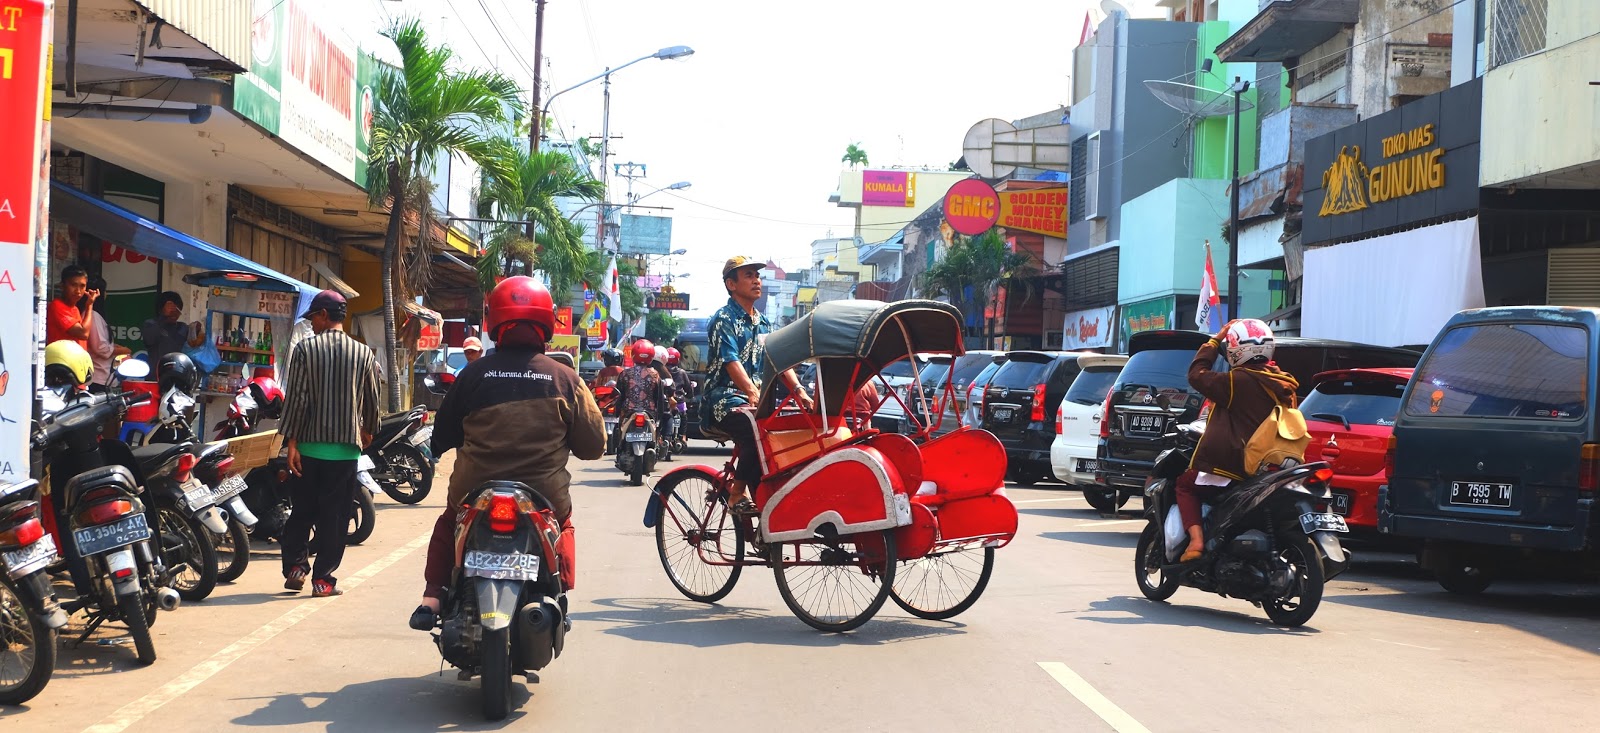 Solo-Surakarta nyüzsgő belvárosa